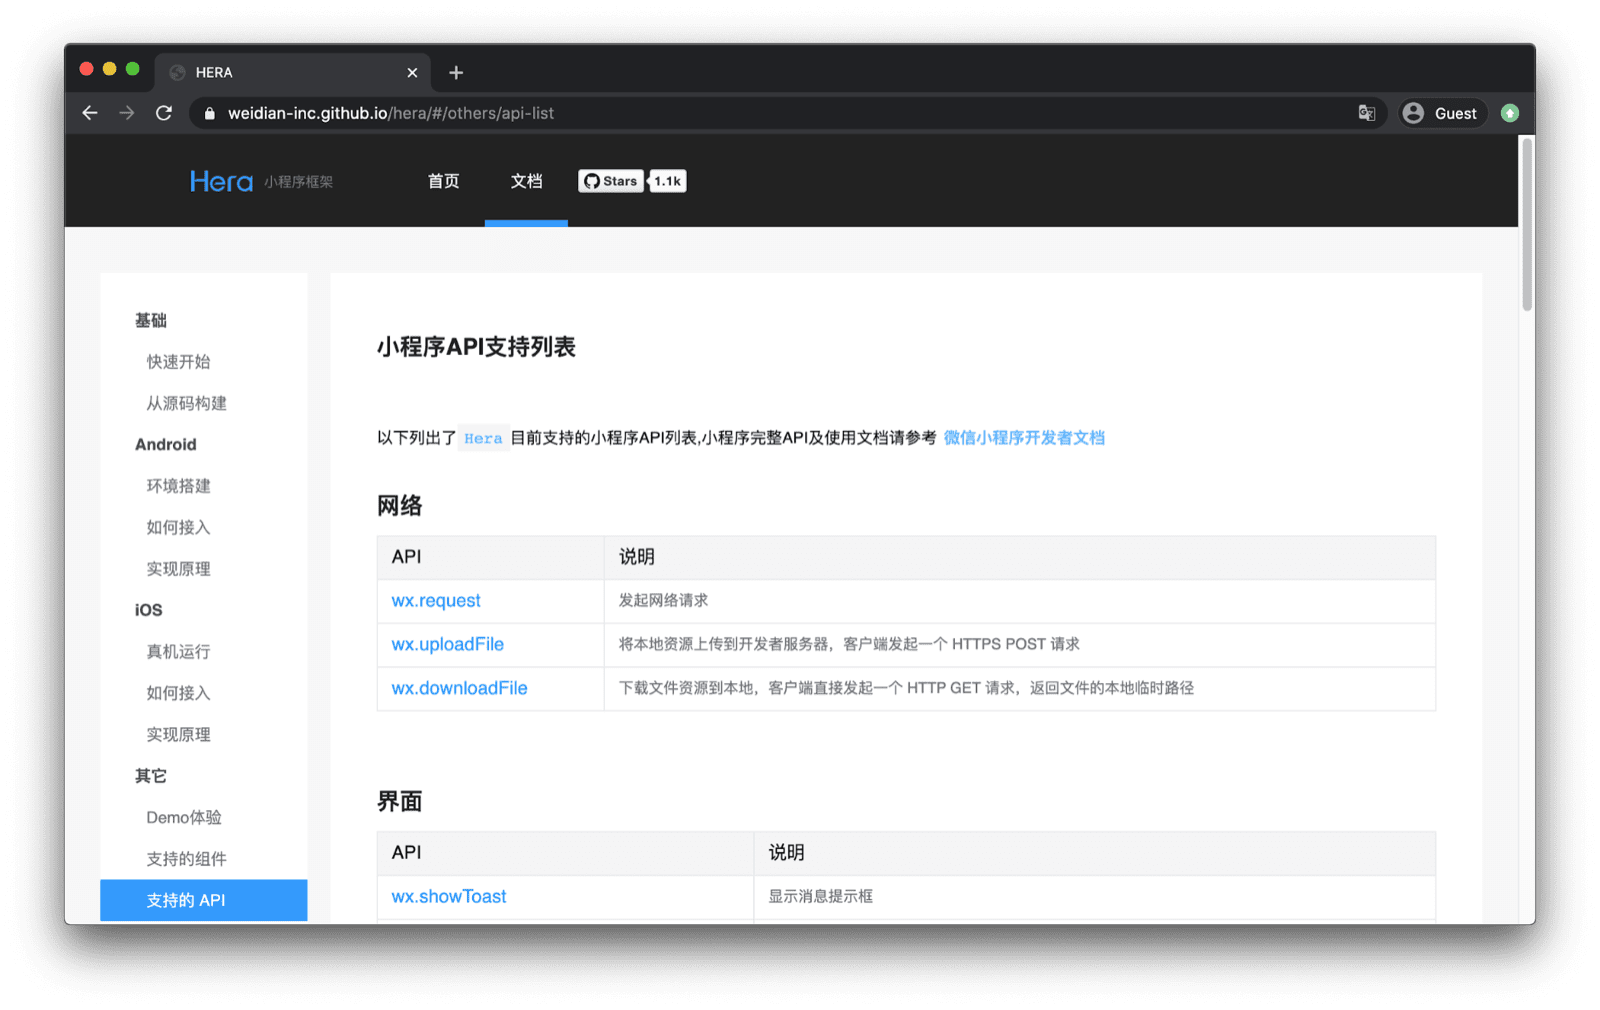 Документация по платформе мини-приложений Hera со списком поддерживаемых ею API WeChat, таких как wx.request, wx.uploadFile и т. д.